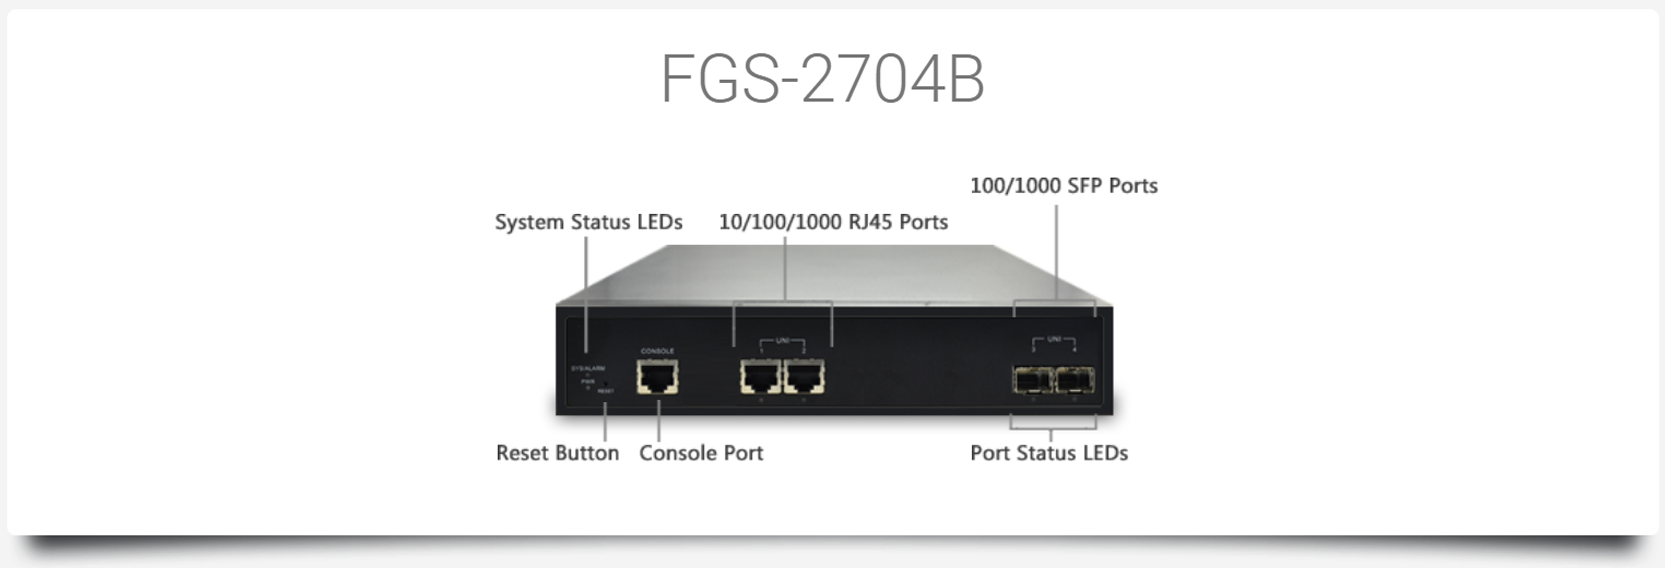 FGS-2704B